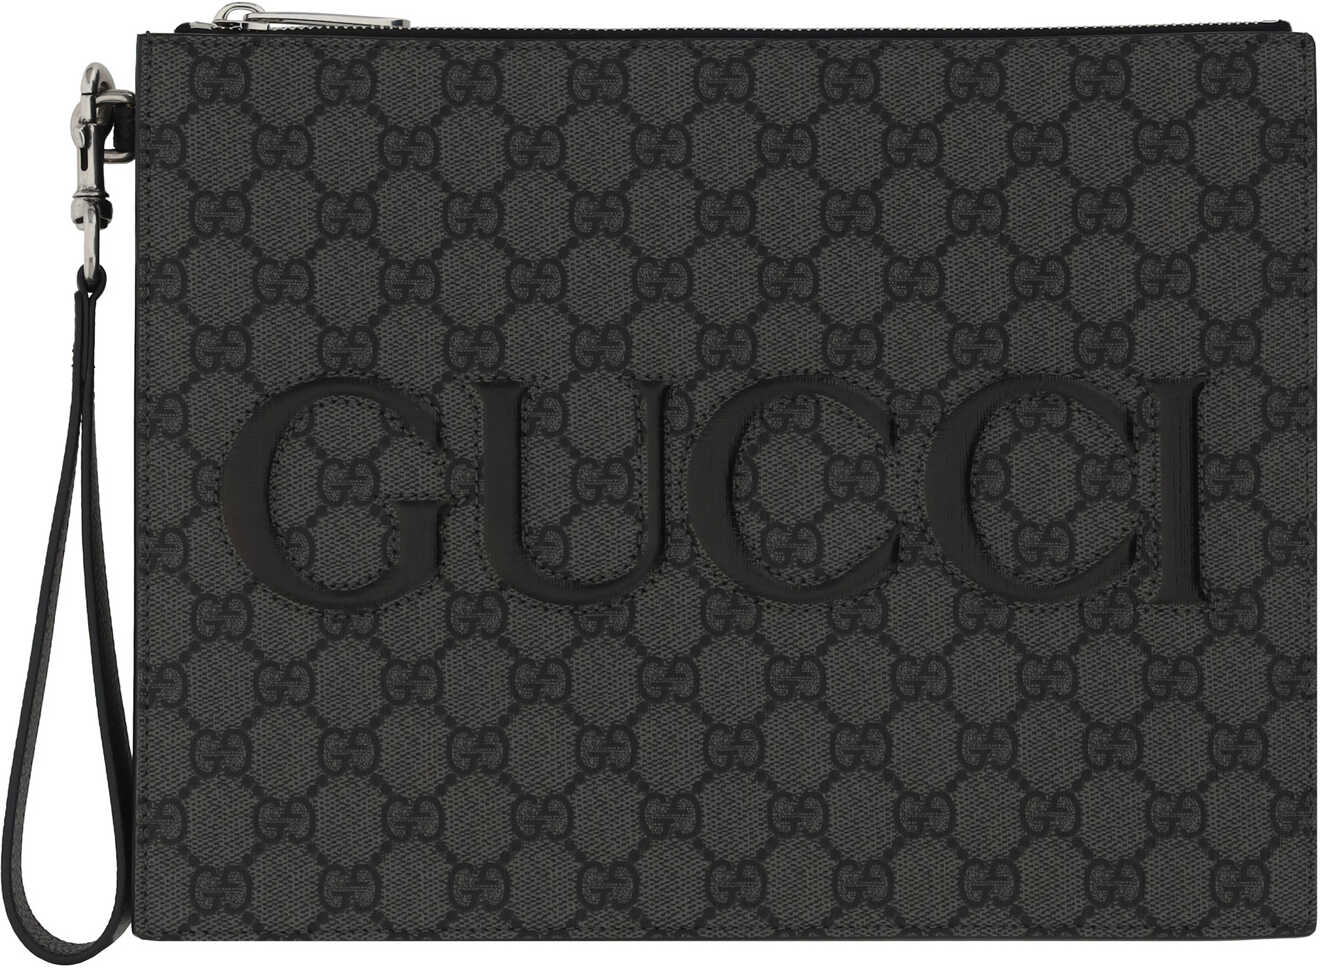 Gucci Clutch Bag GREY/BLACK